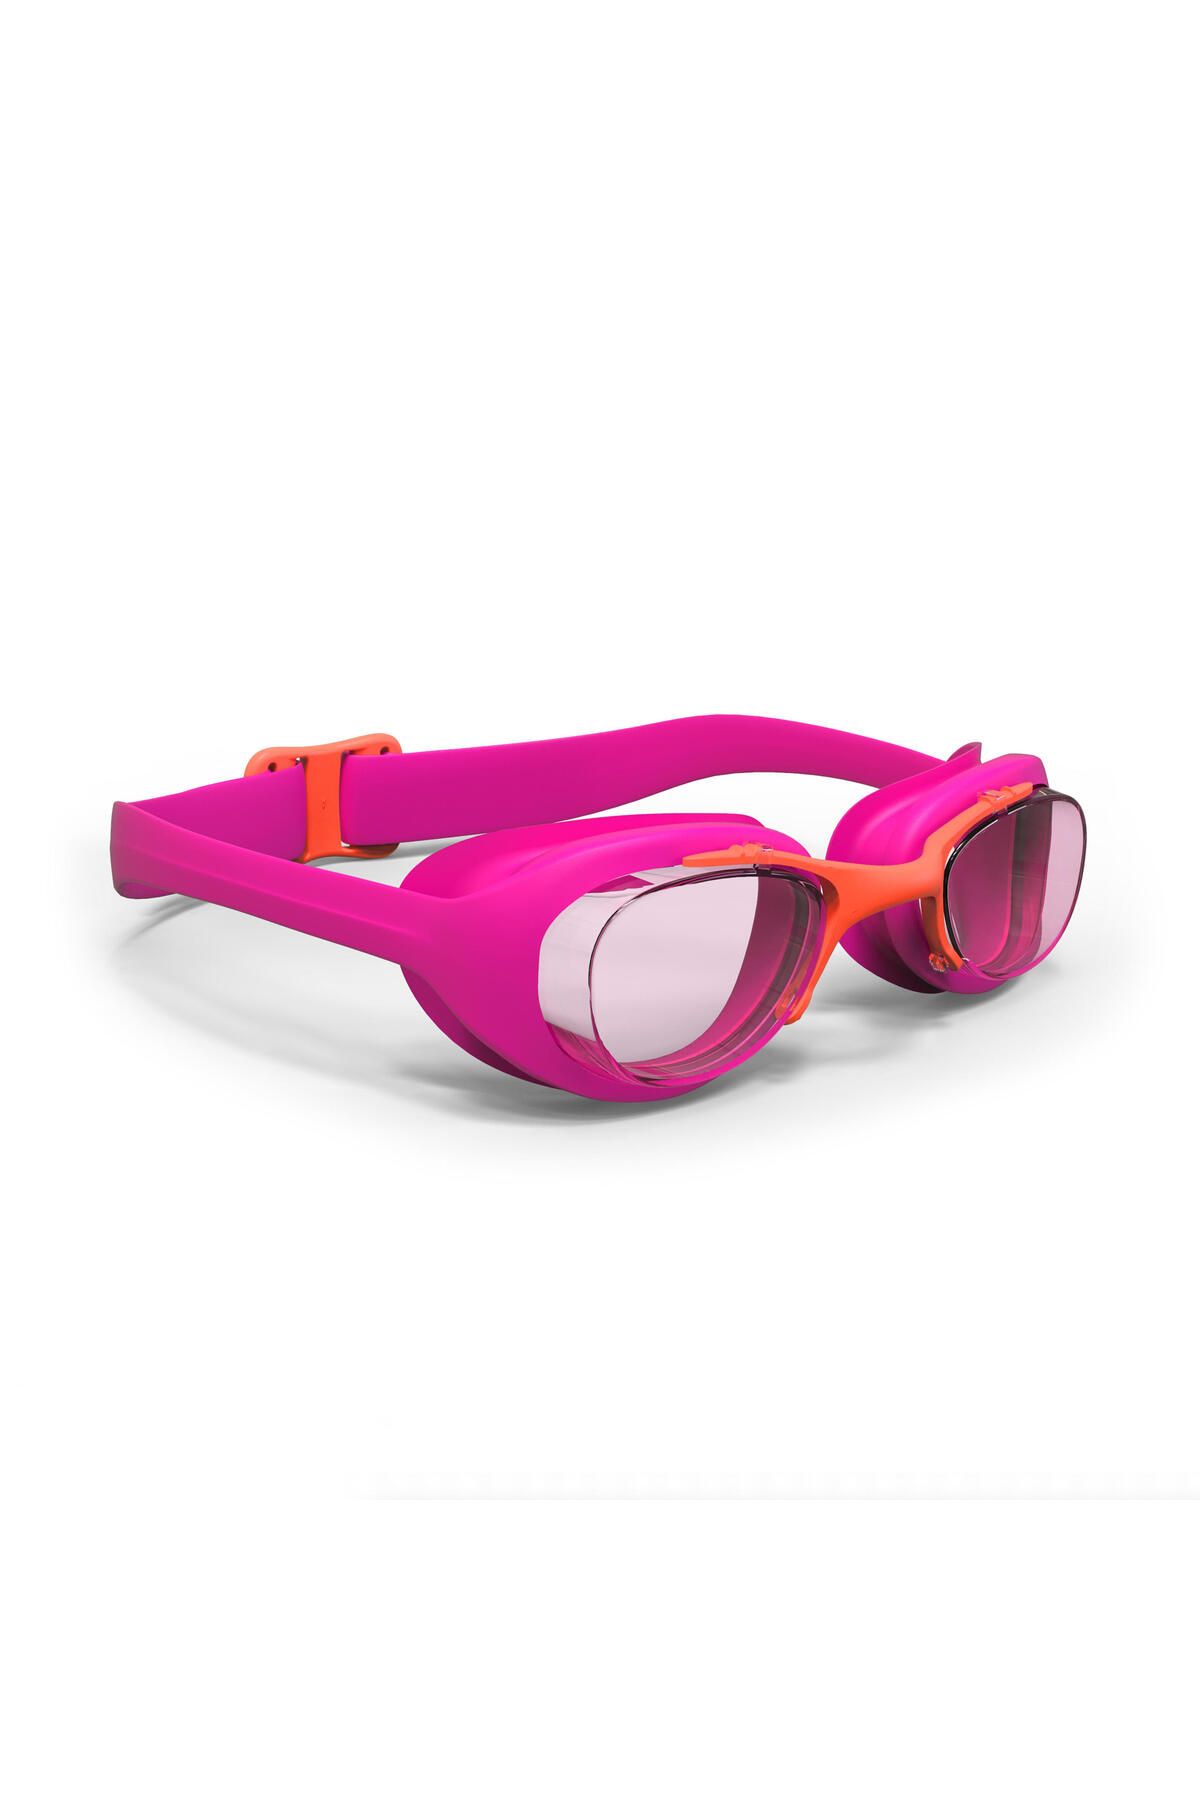 Decathlon Yüzücü Gözlüğü - S Boy - Şeffaf Camlar - Pembe - 100 Xbase